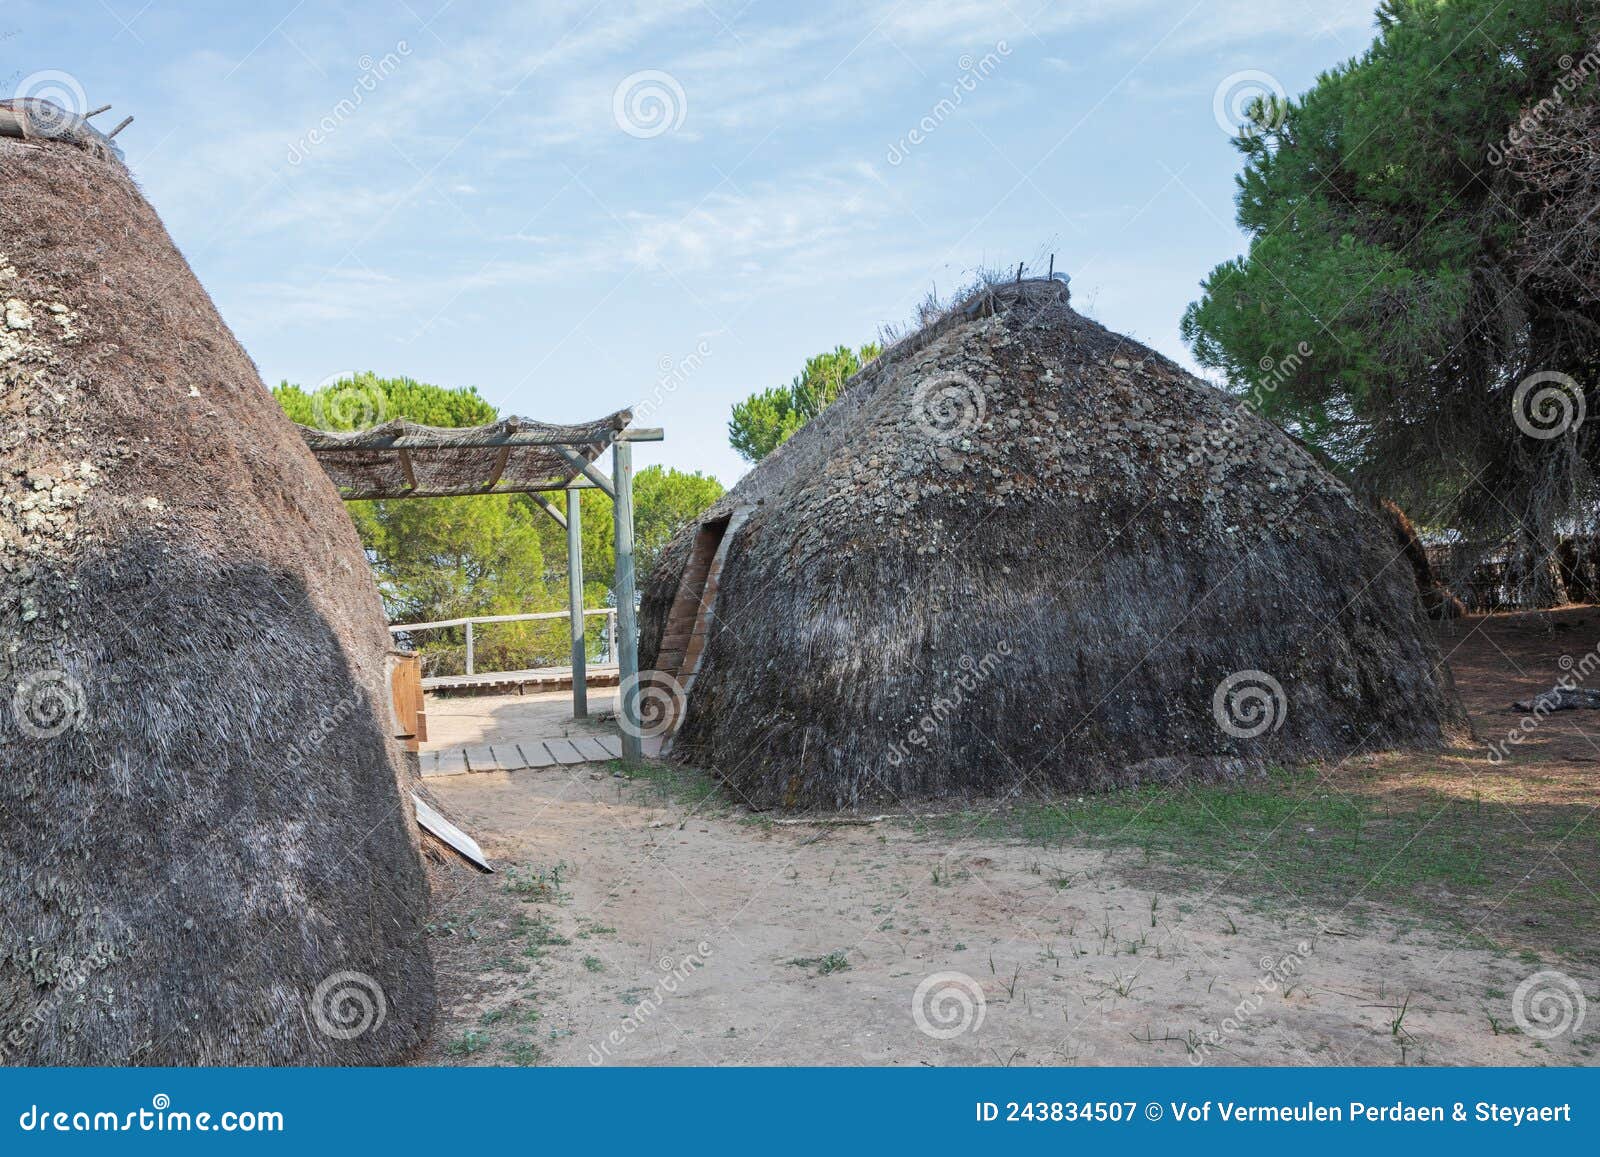 traditional huts along the poblado de la plancha footpath